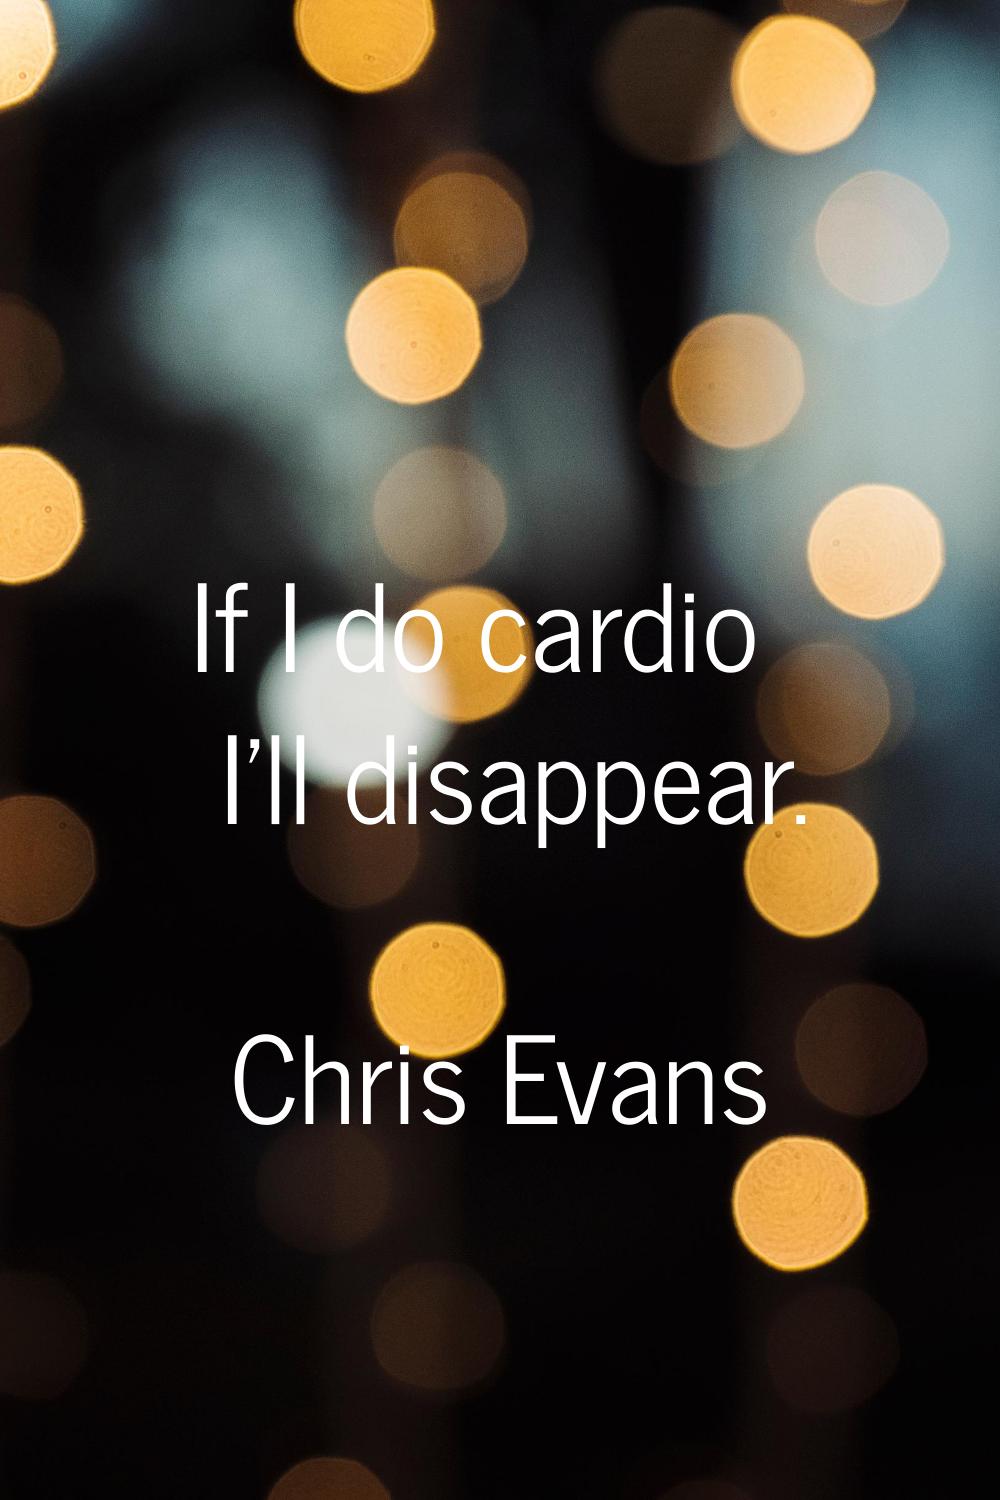 If I do cardio I'll disappear.